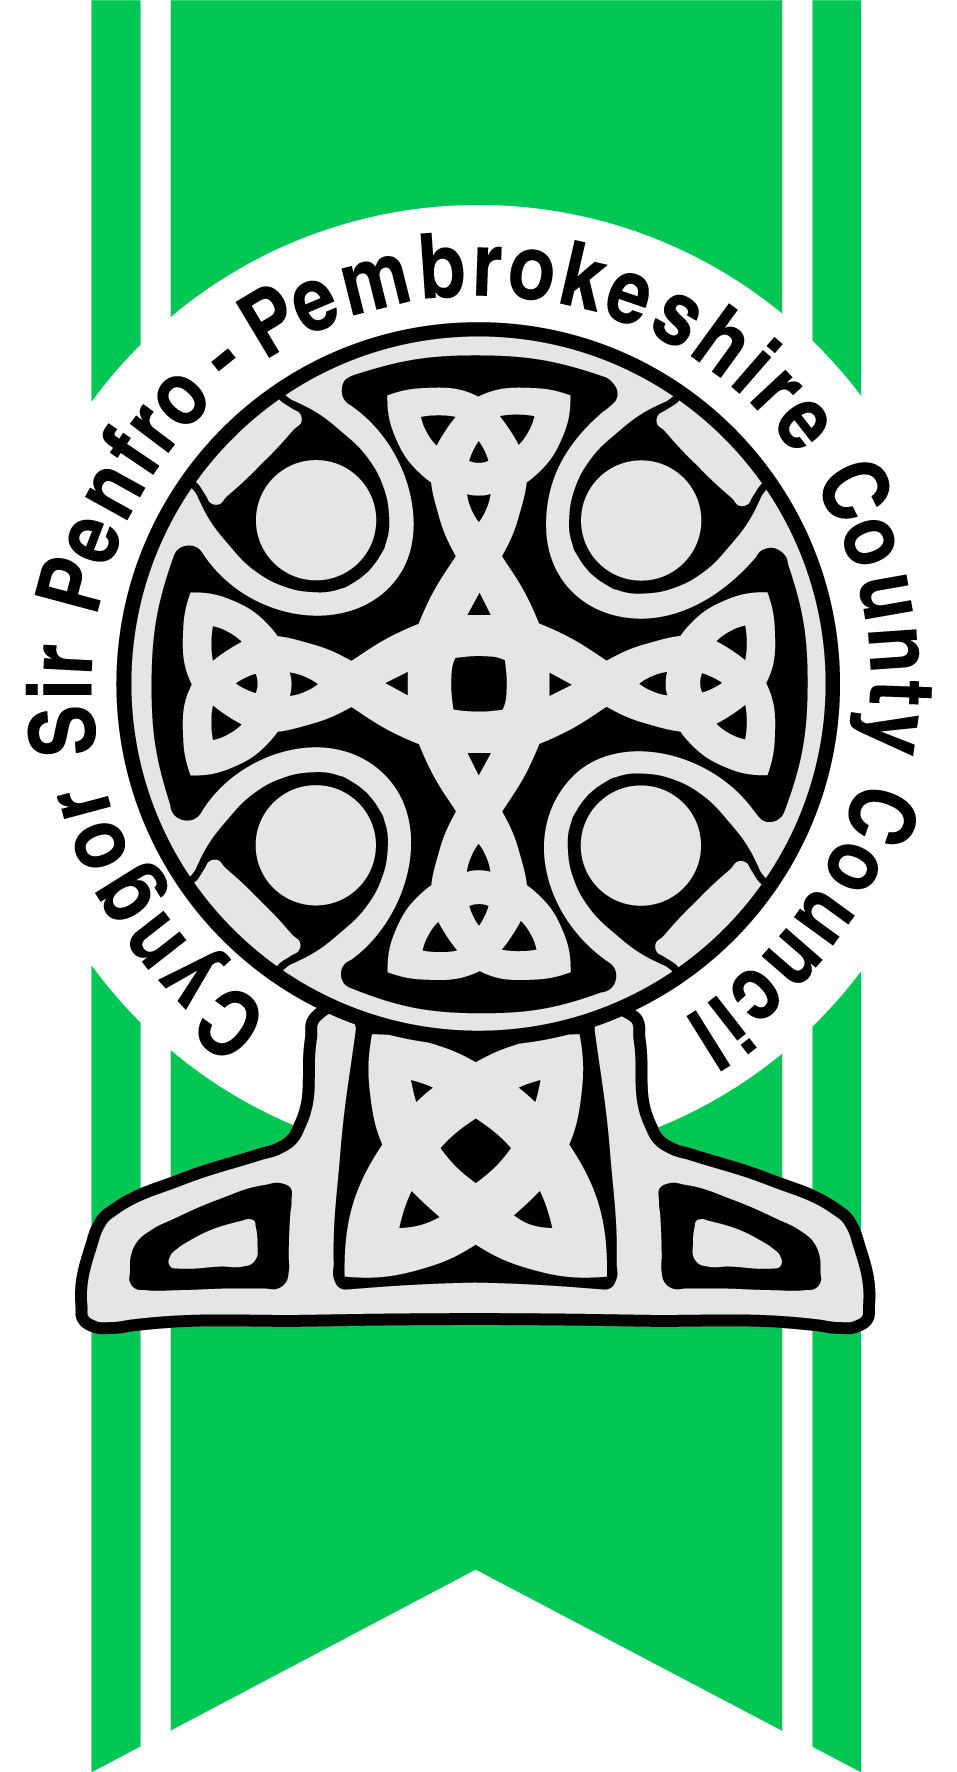 Views Sought On Council Tax Reduction Scheme Pembrokeshire County Council